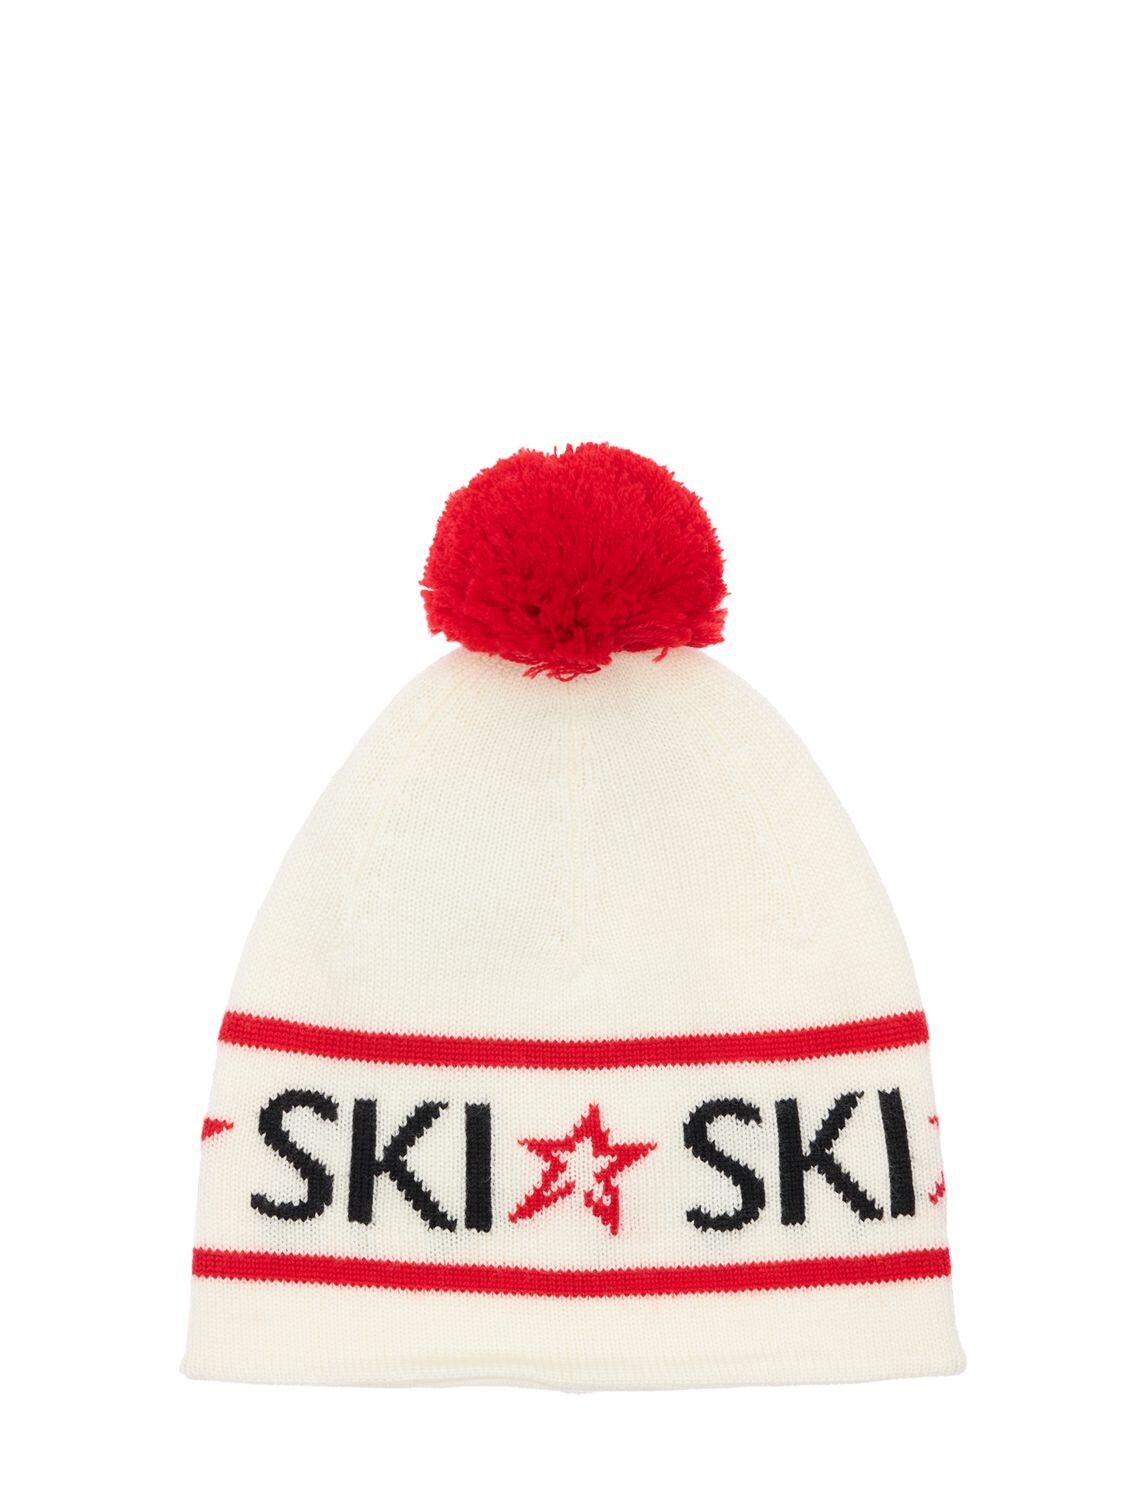 Perfect Moment Ski Merino Wool Beanie In White,red